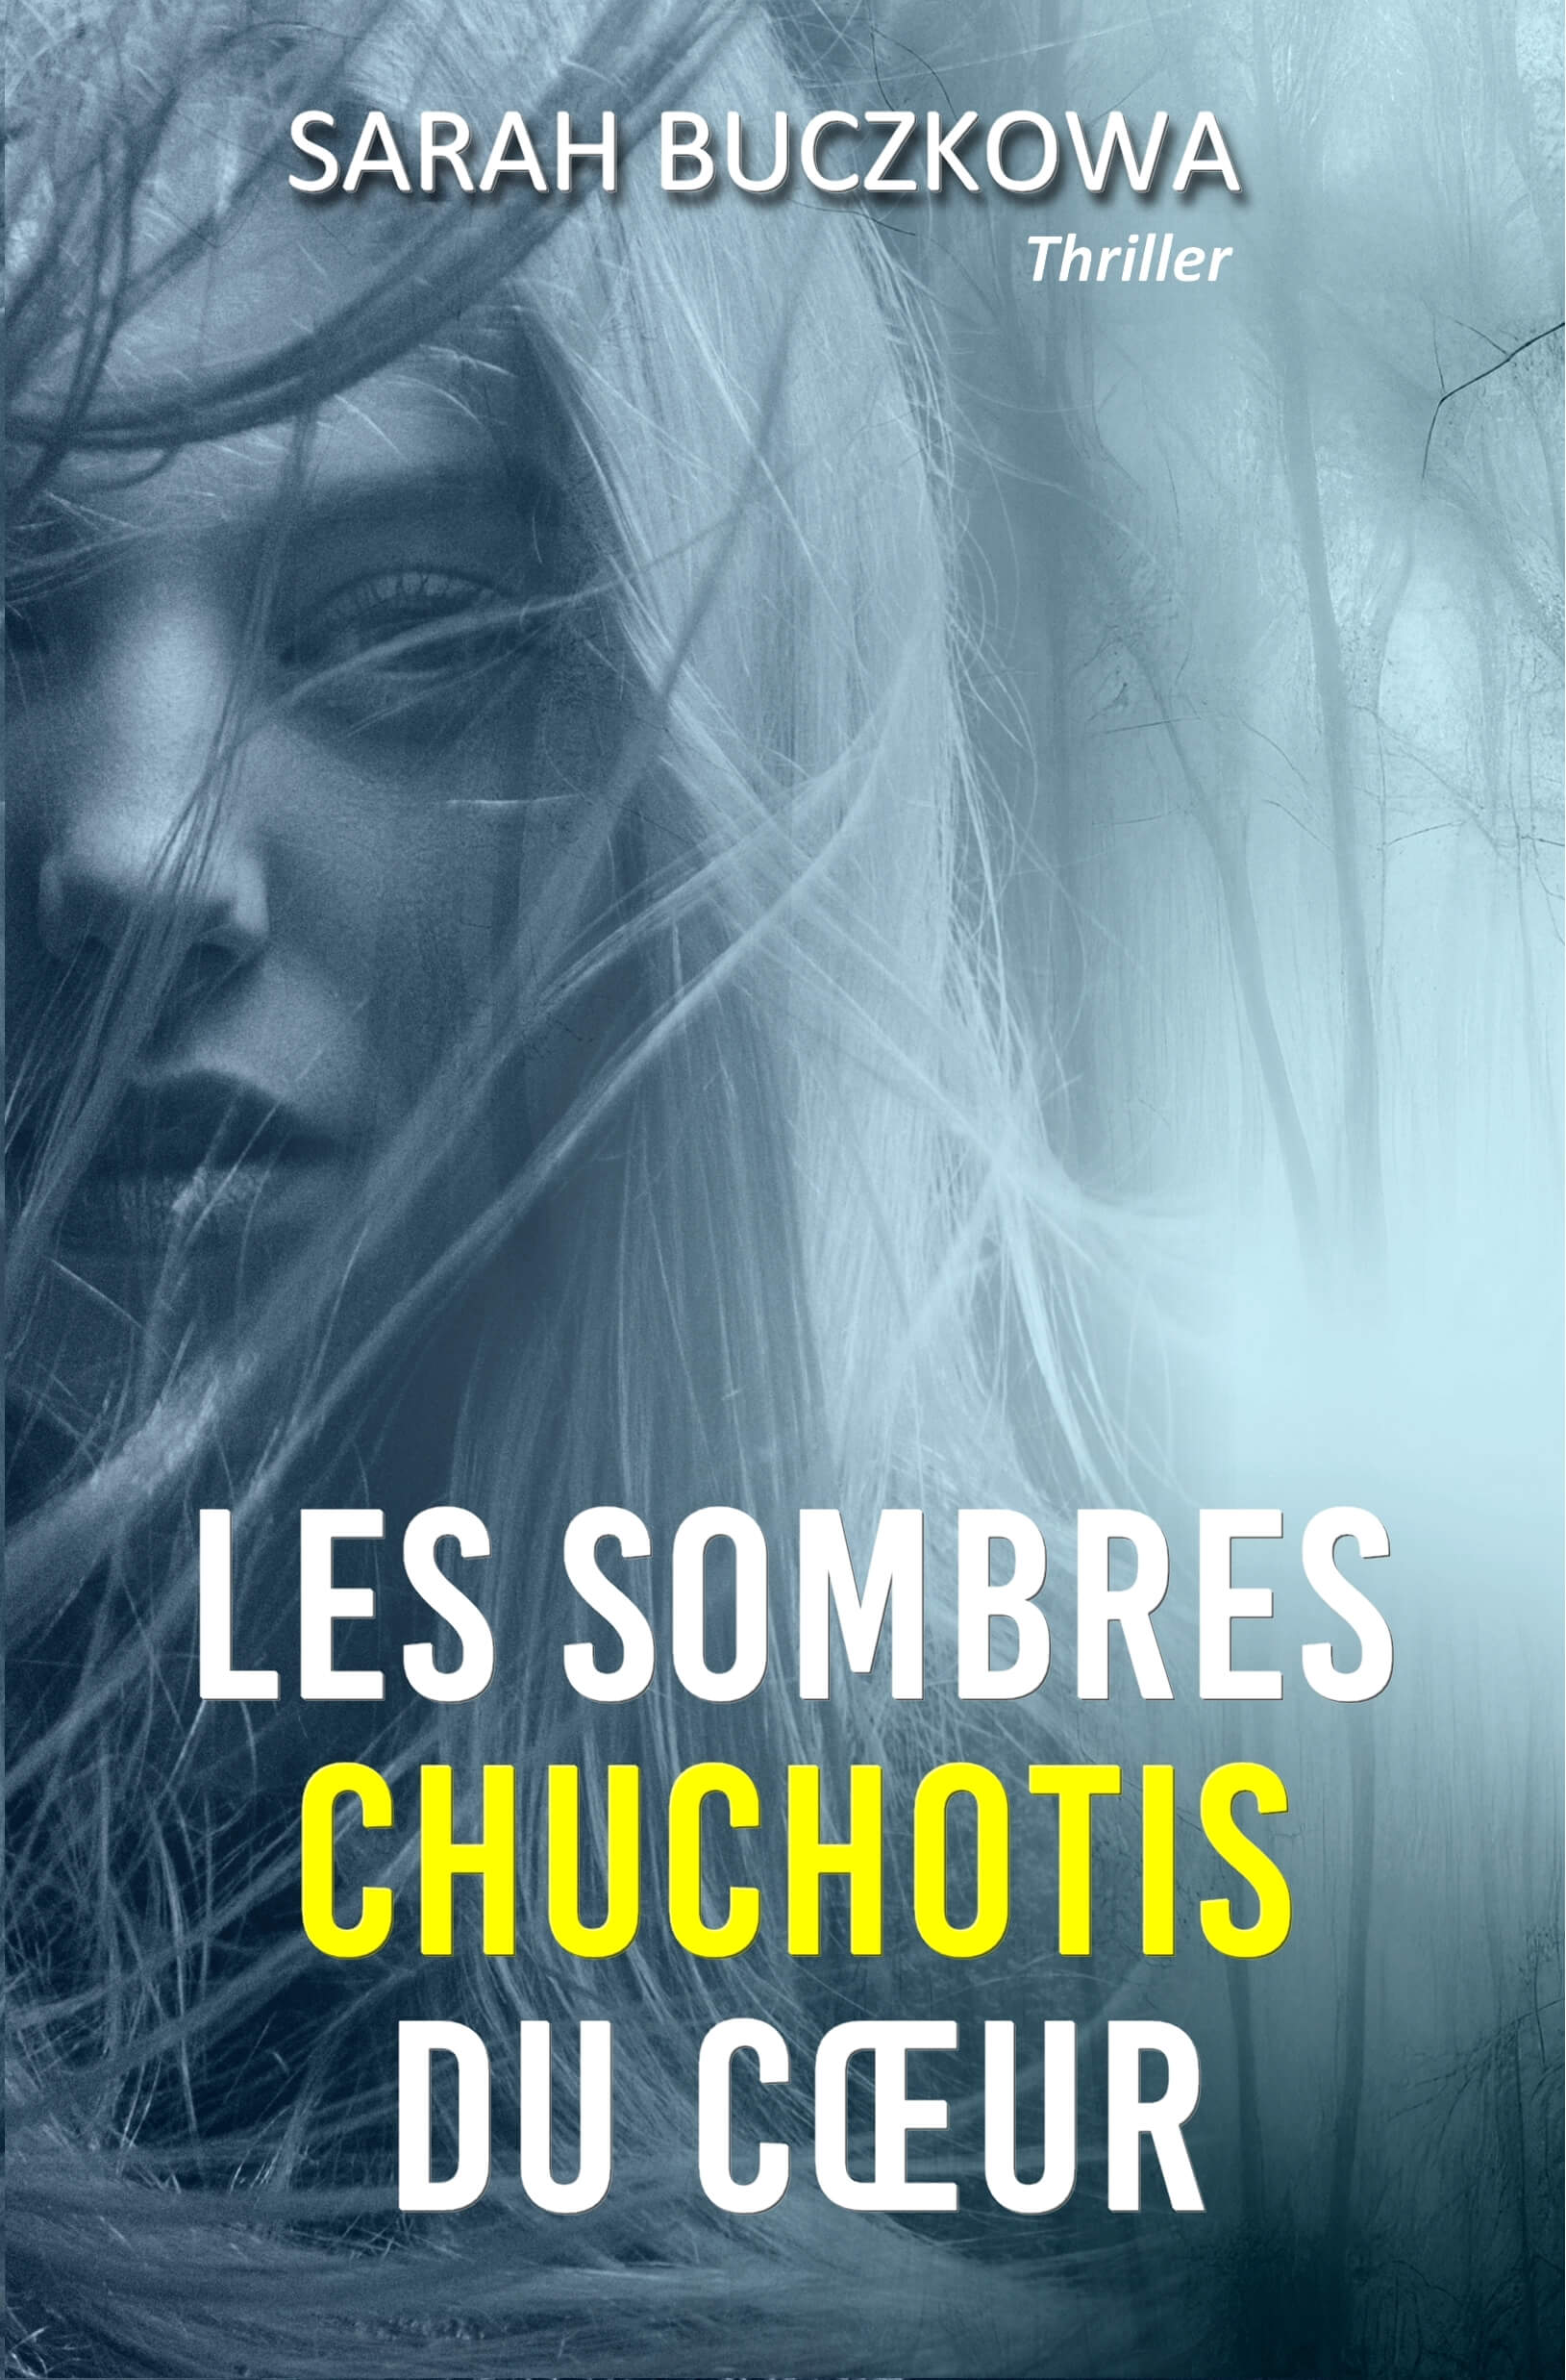 Couverture "Les sombres chuchotis du cœur" (Sarah Buczkowa)